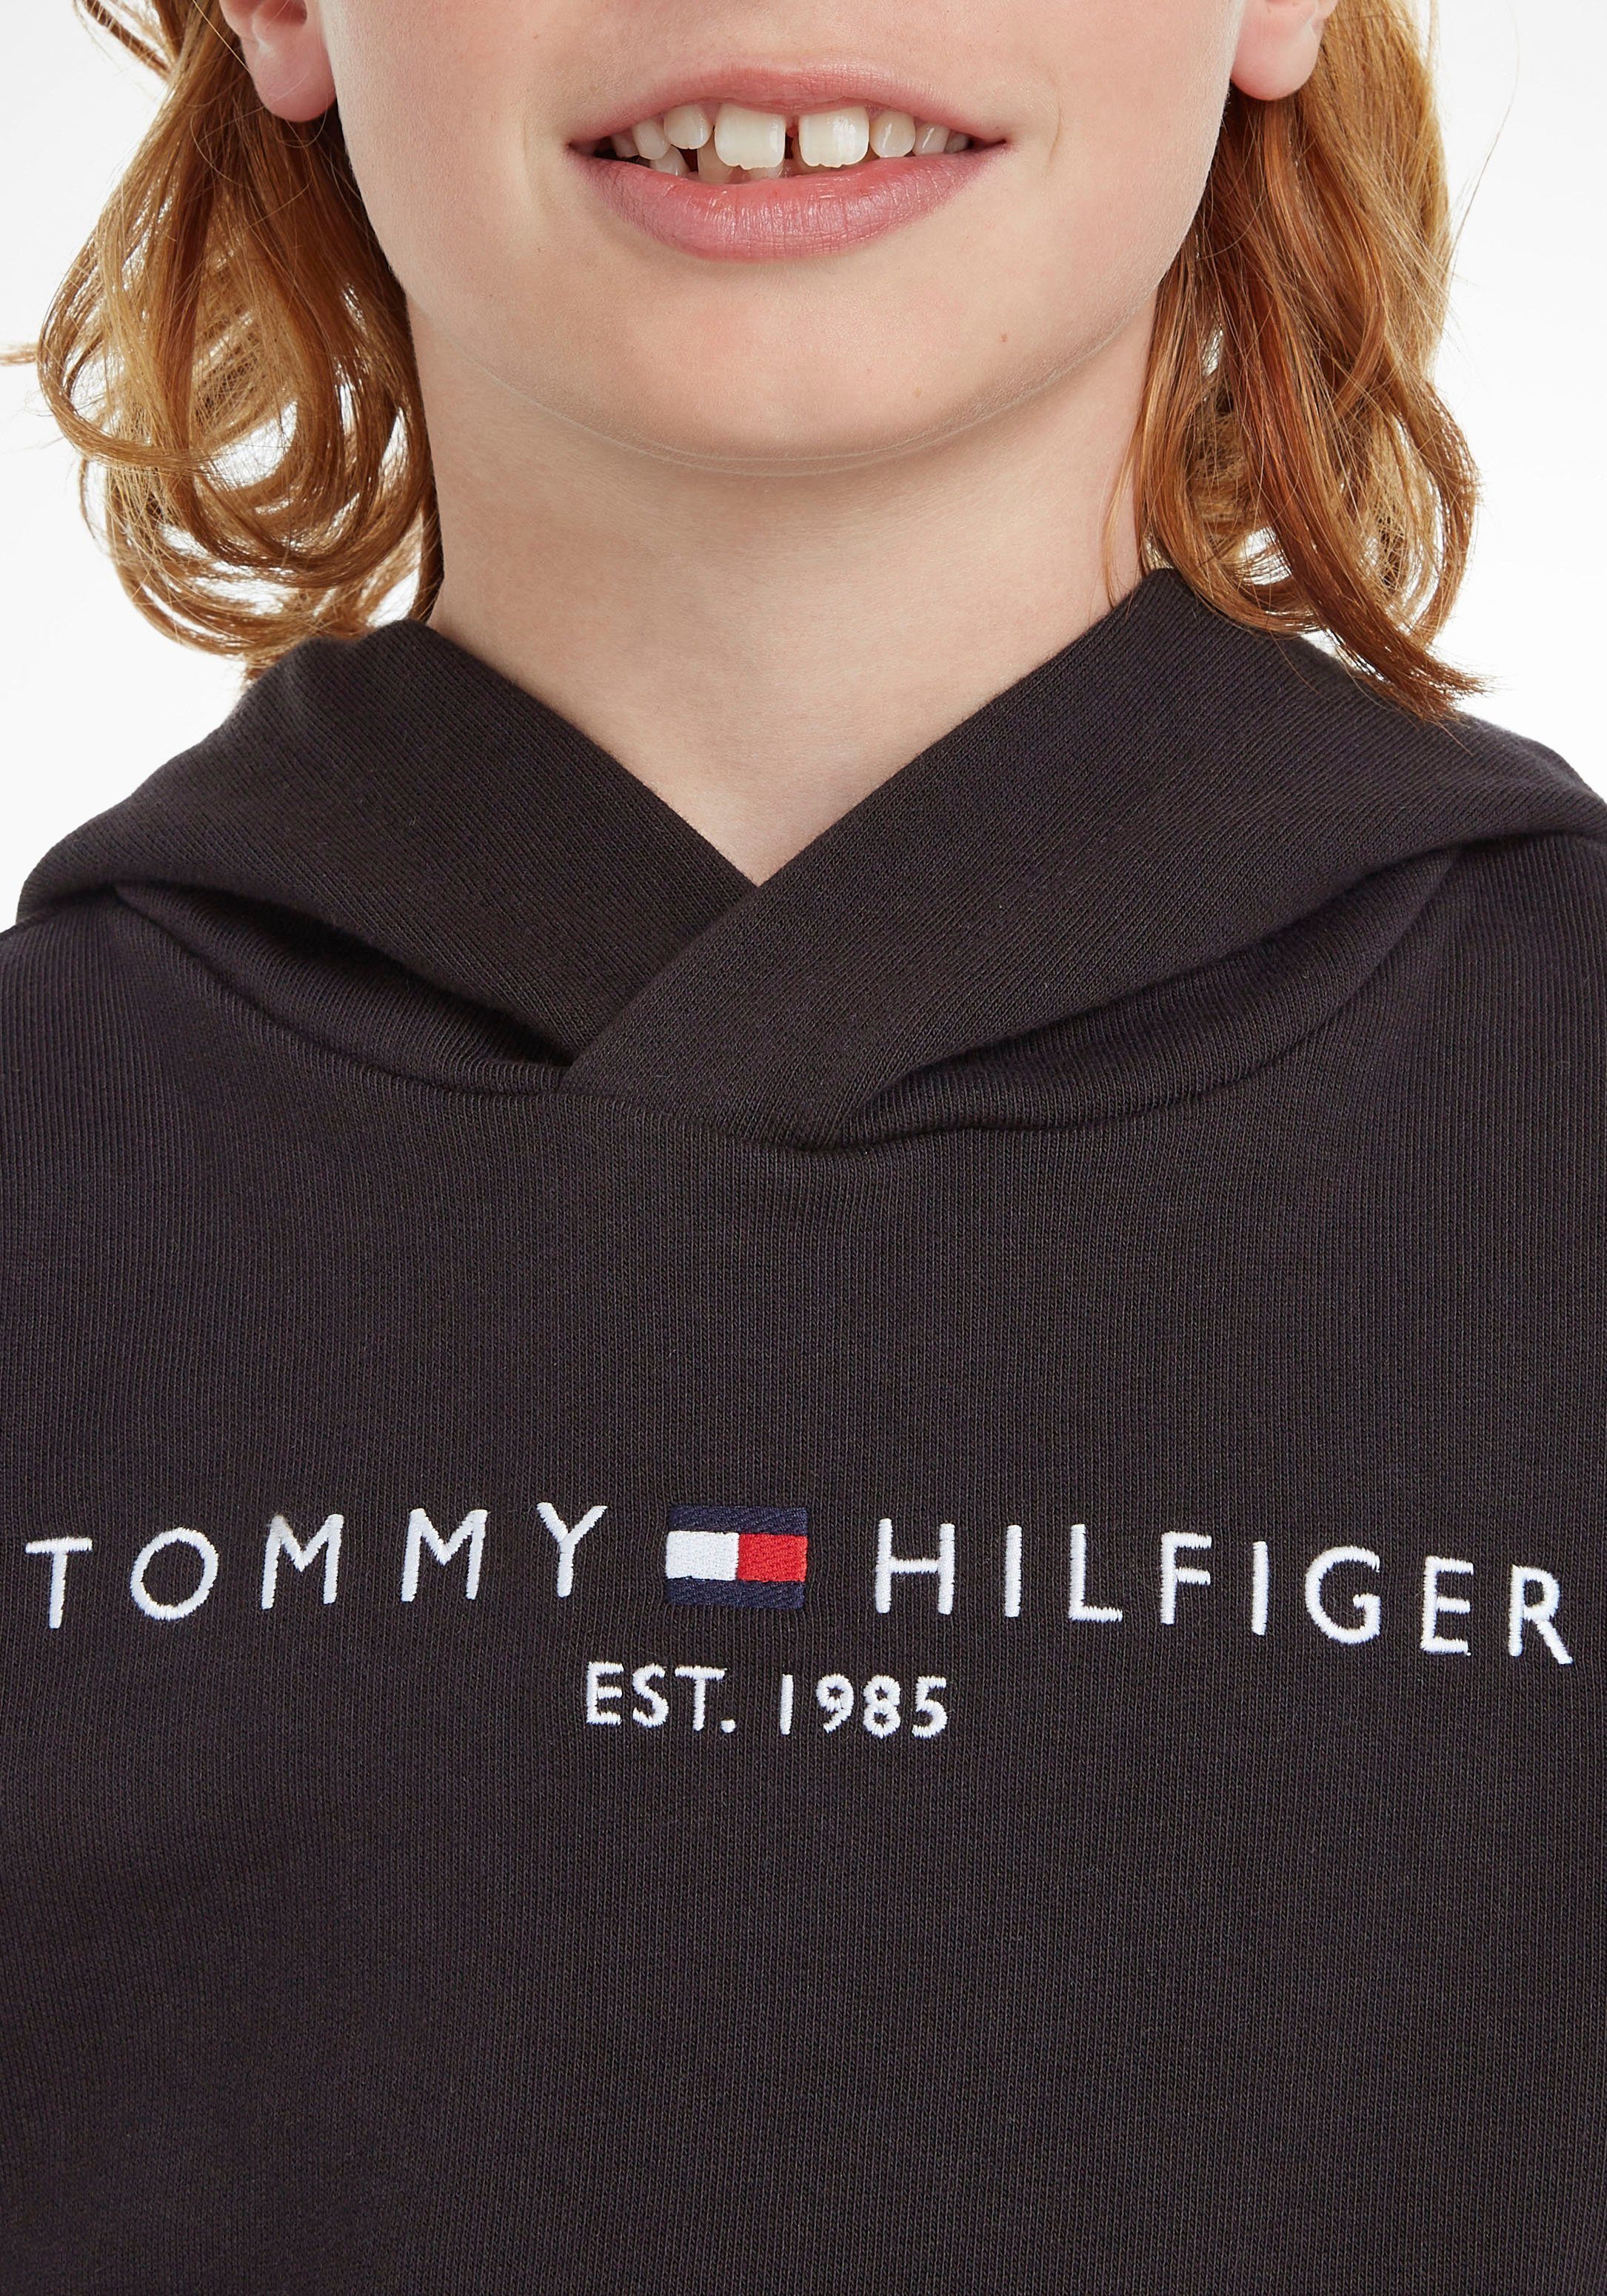 ESSENTIAL HOODIE Jungen für Mädchen und Tommy Hilfiger Kapuzensweatshirt